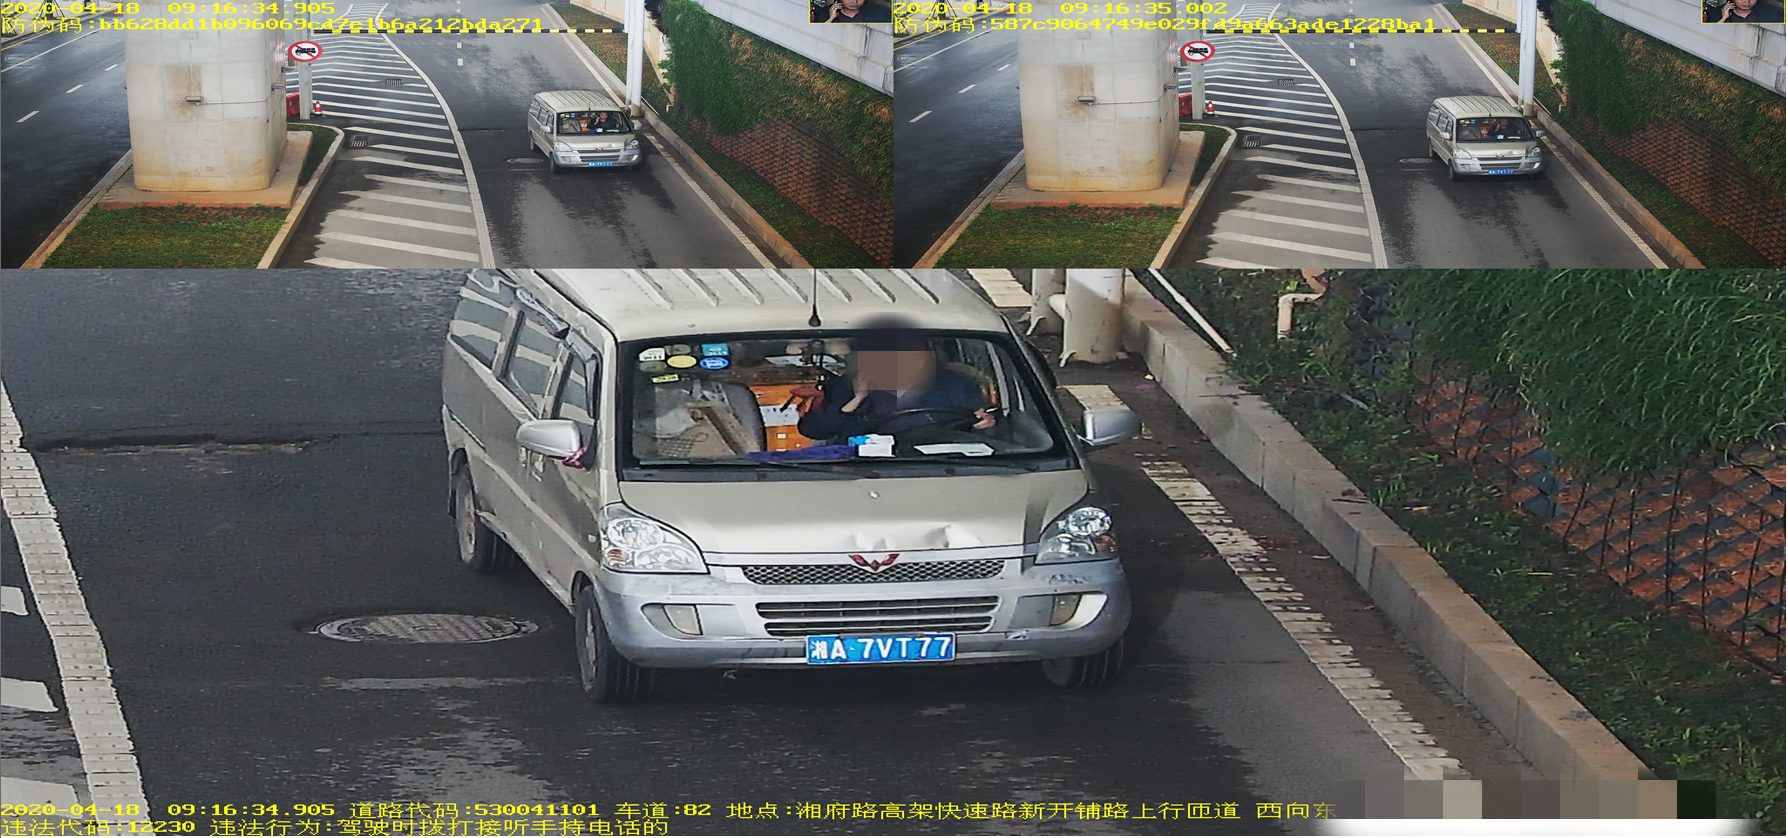 湘A7VT77在湘府路高架快速路新开铺路口驾驶时拨打接听手持电话的，罚款200元、记2分。